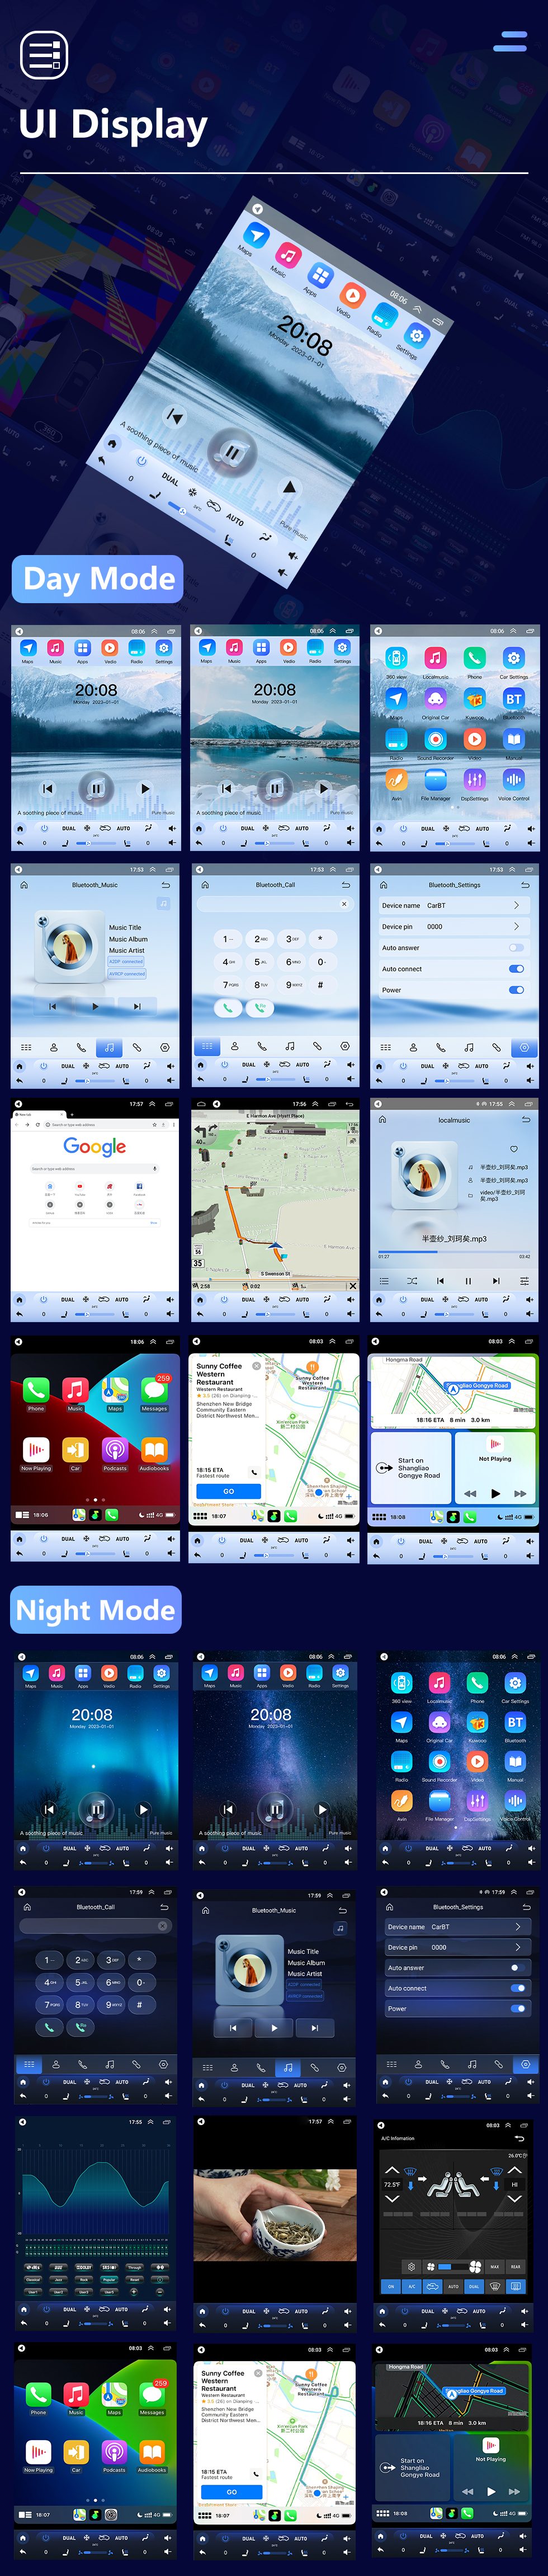 Seicane 9,7-дюймовый сенсорный экран Tesla Style Android 10.0 HD для Ford Focus 2012–2015 гг. Автомобильная стереосистема Радио Головное устройство GPS-навигация Поддержка Bluetooth Камера заднего вида TPMS WIFI OBD2